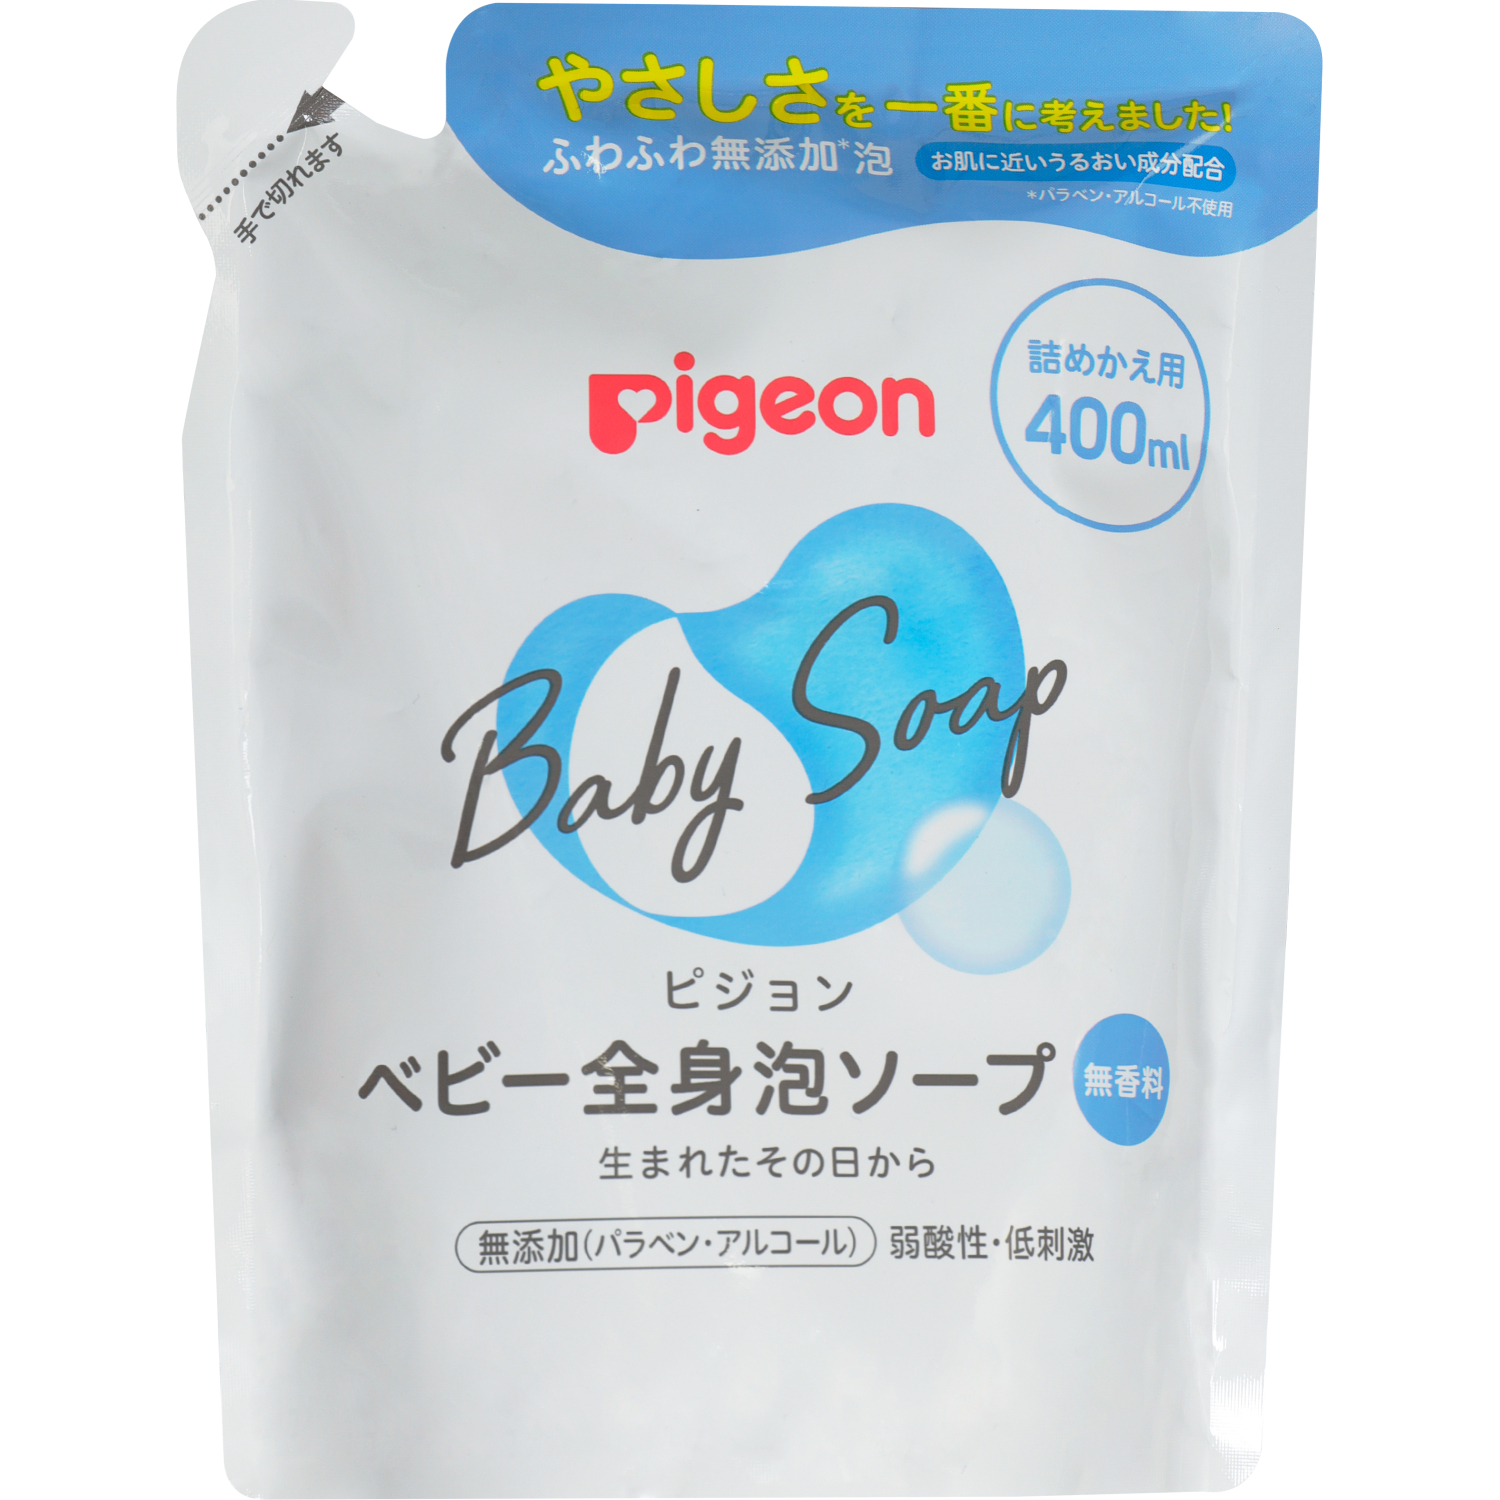 Мыло-пенка Pigeon для младенцев сменный блок 400 мл jundo мыло пенка для рук desert rose 5 л